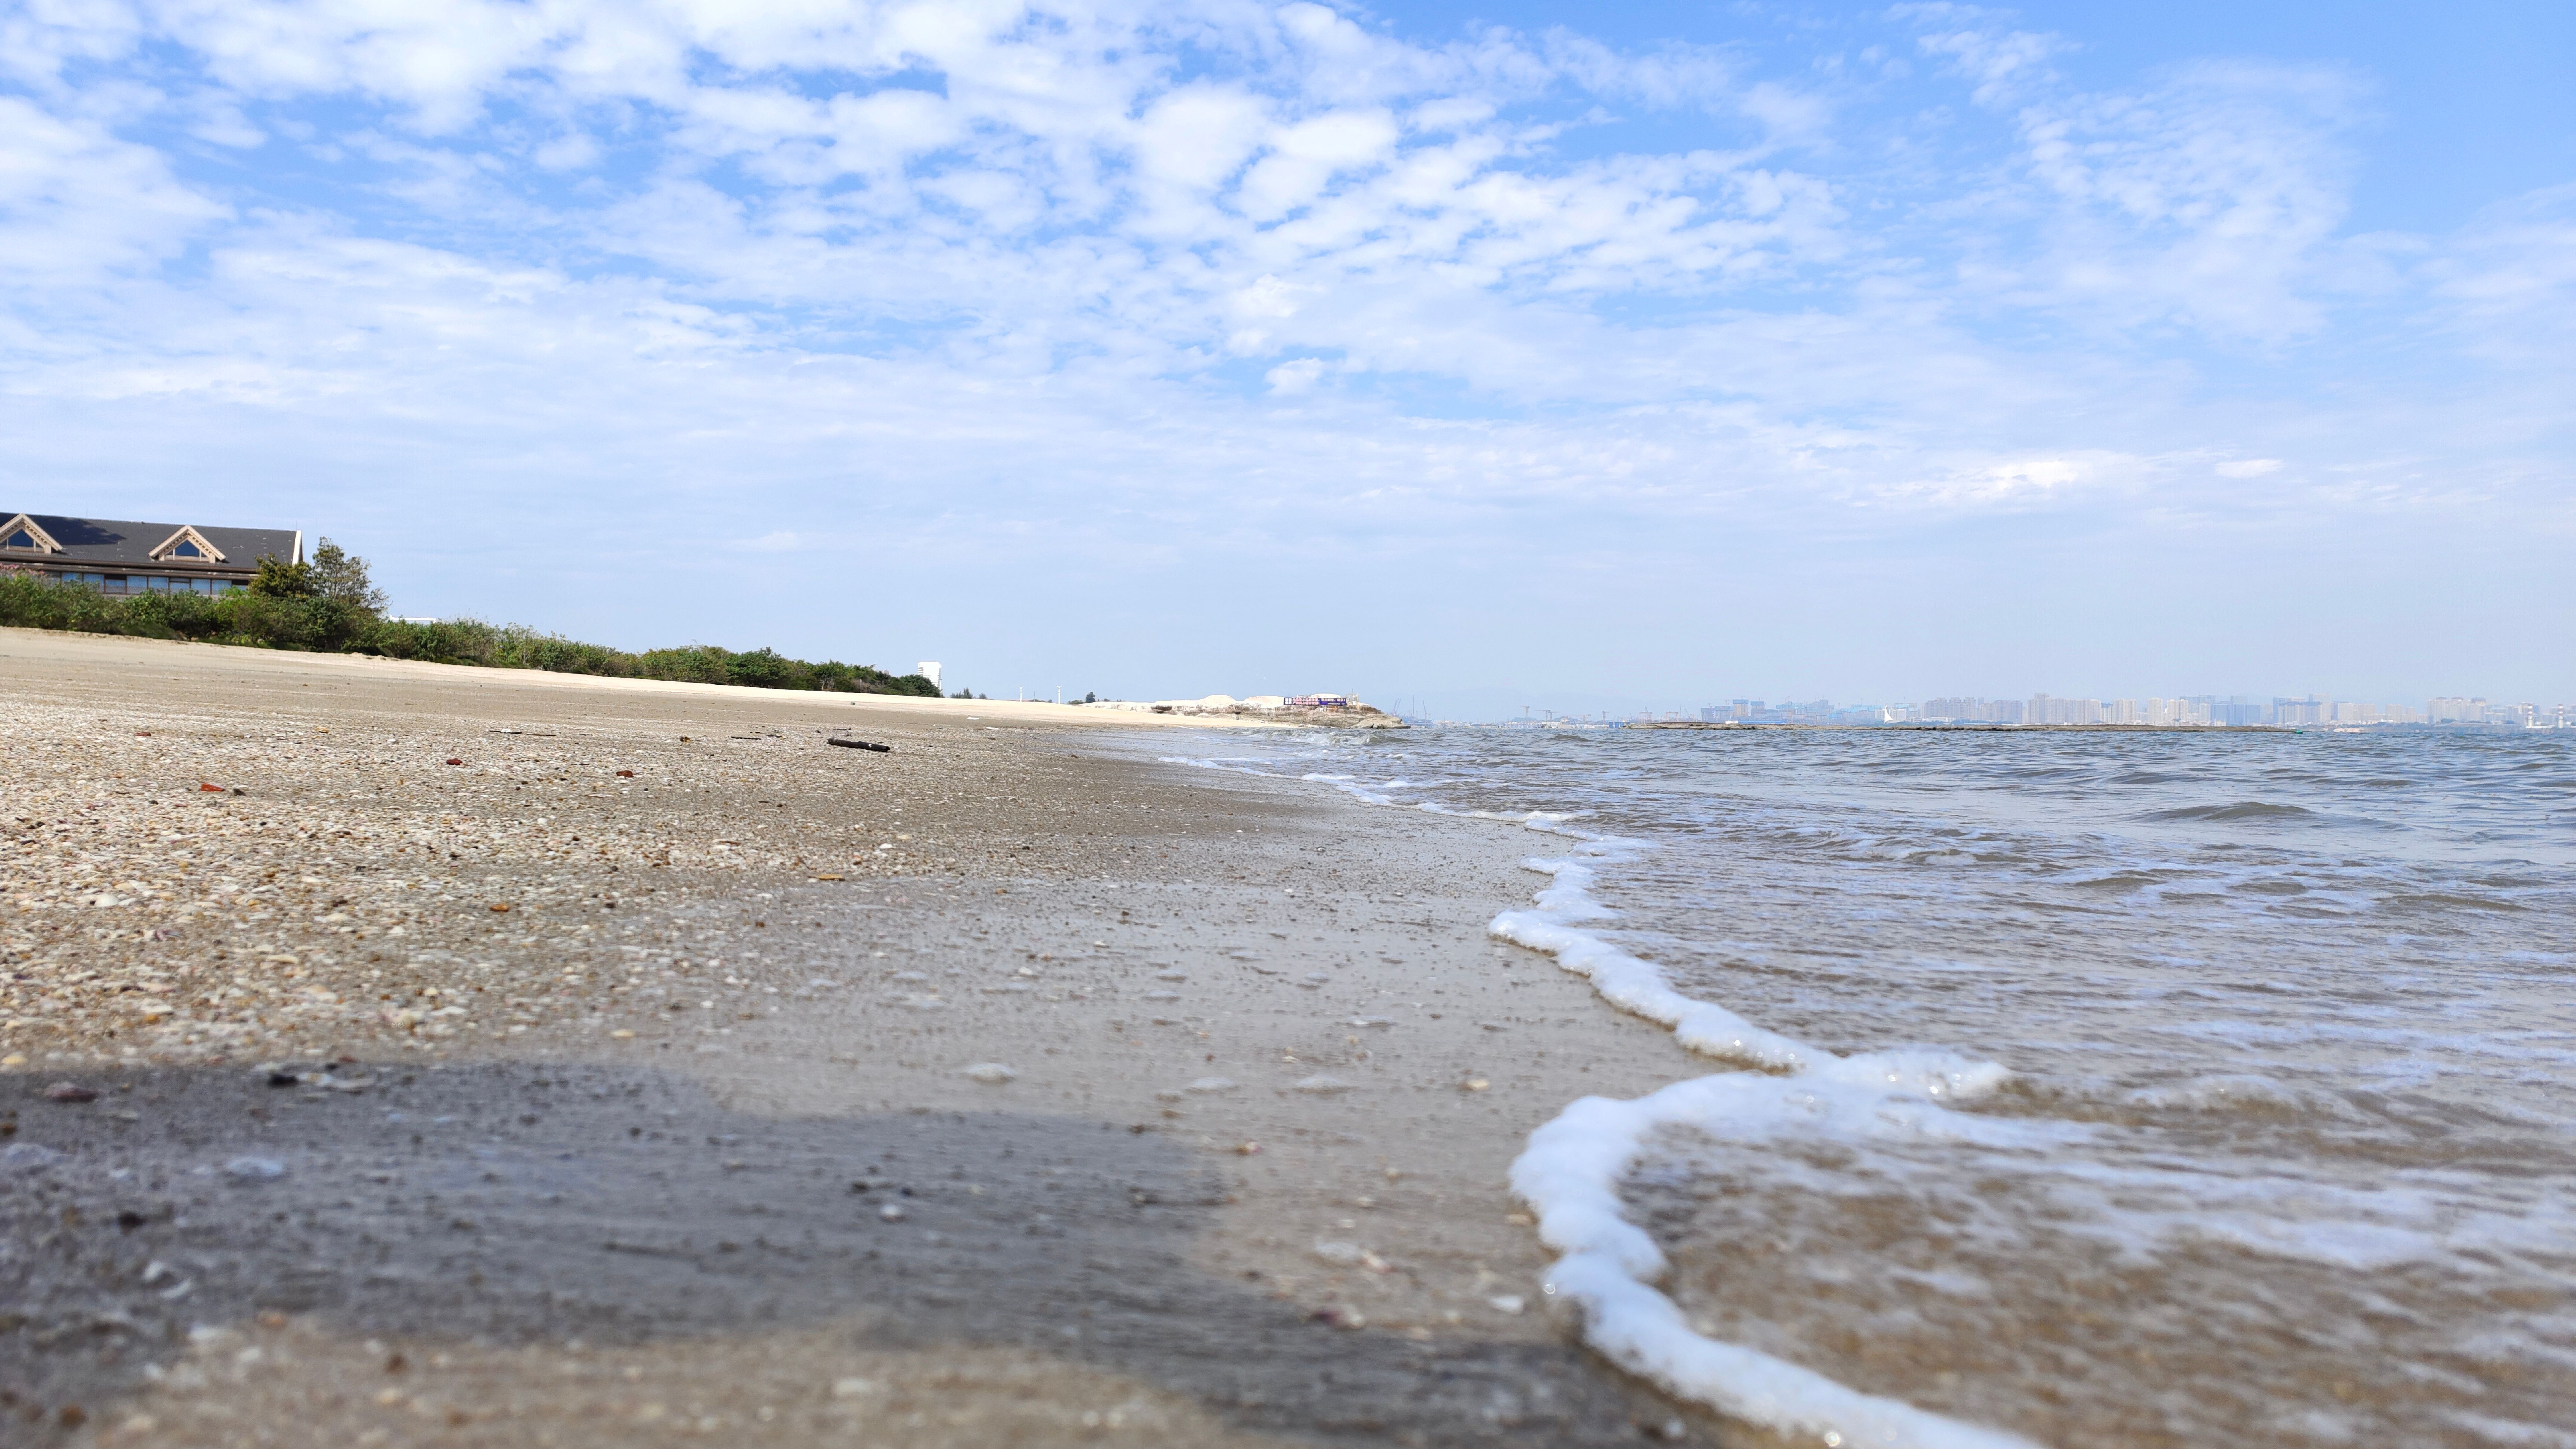 环岛路海滩是厦门最好的海滩,不接受任何反驳!追着海浪踏足沙滩